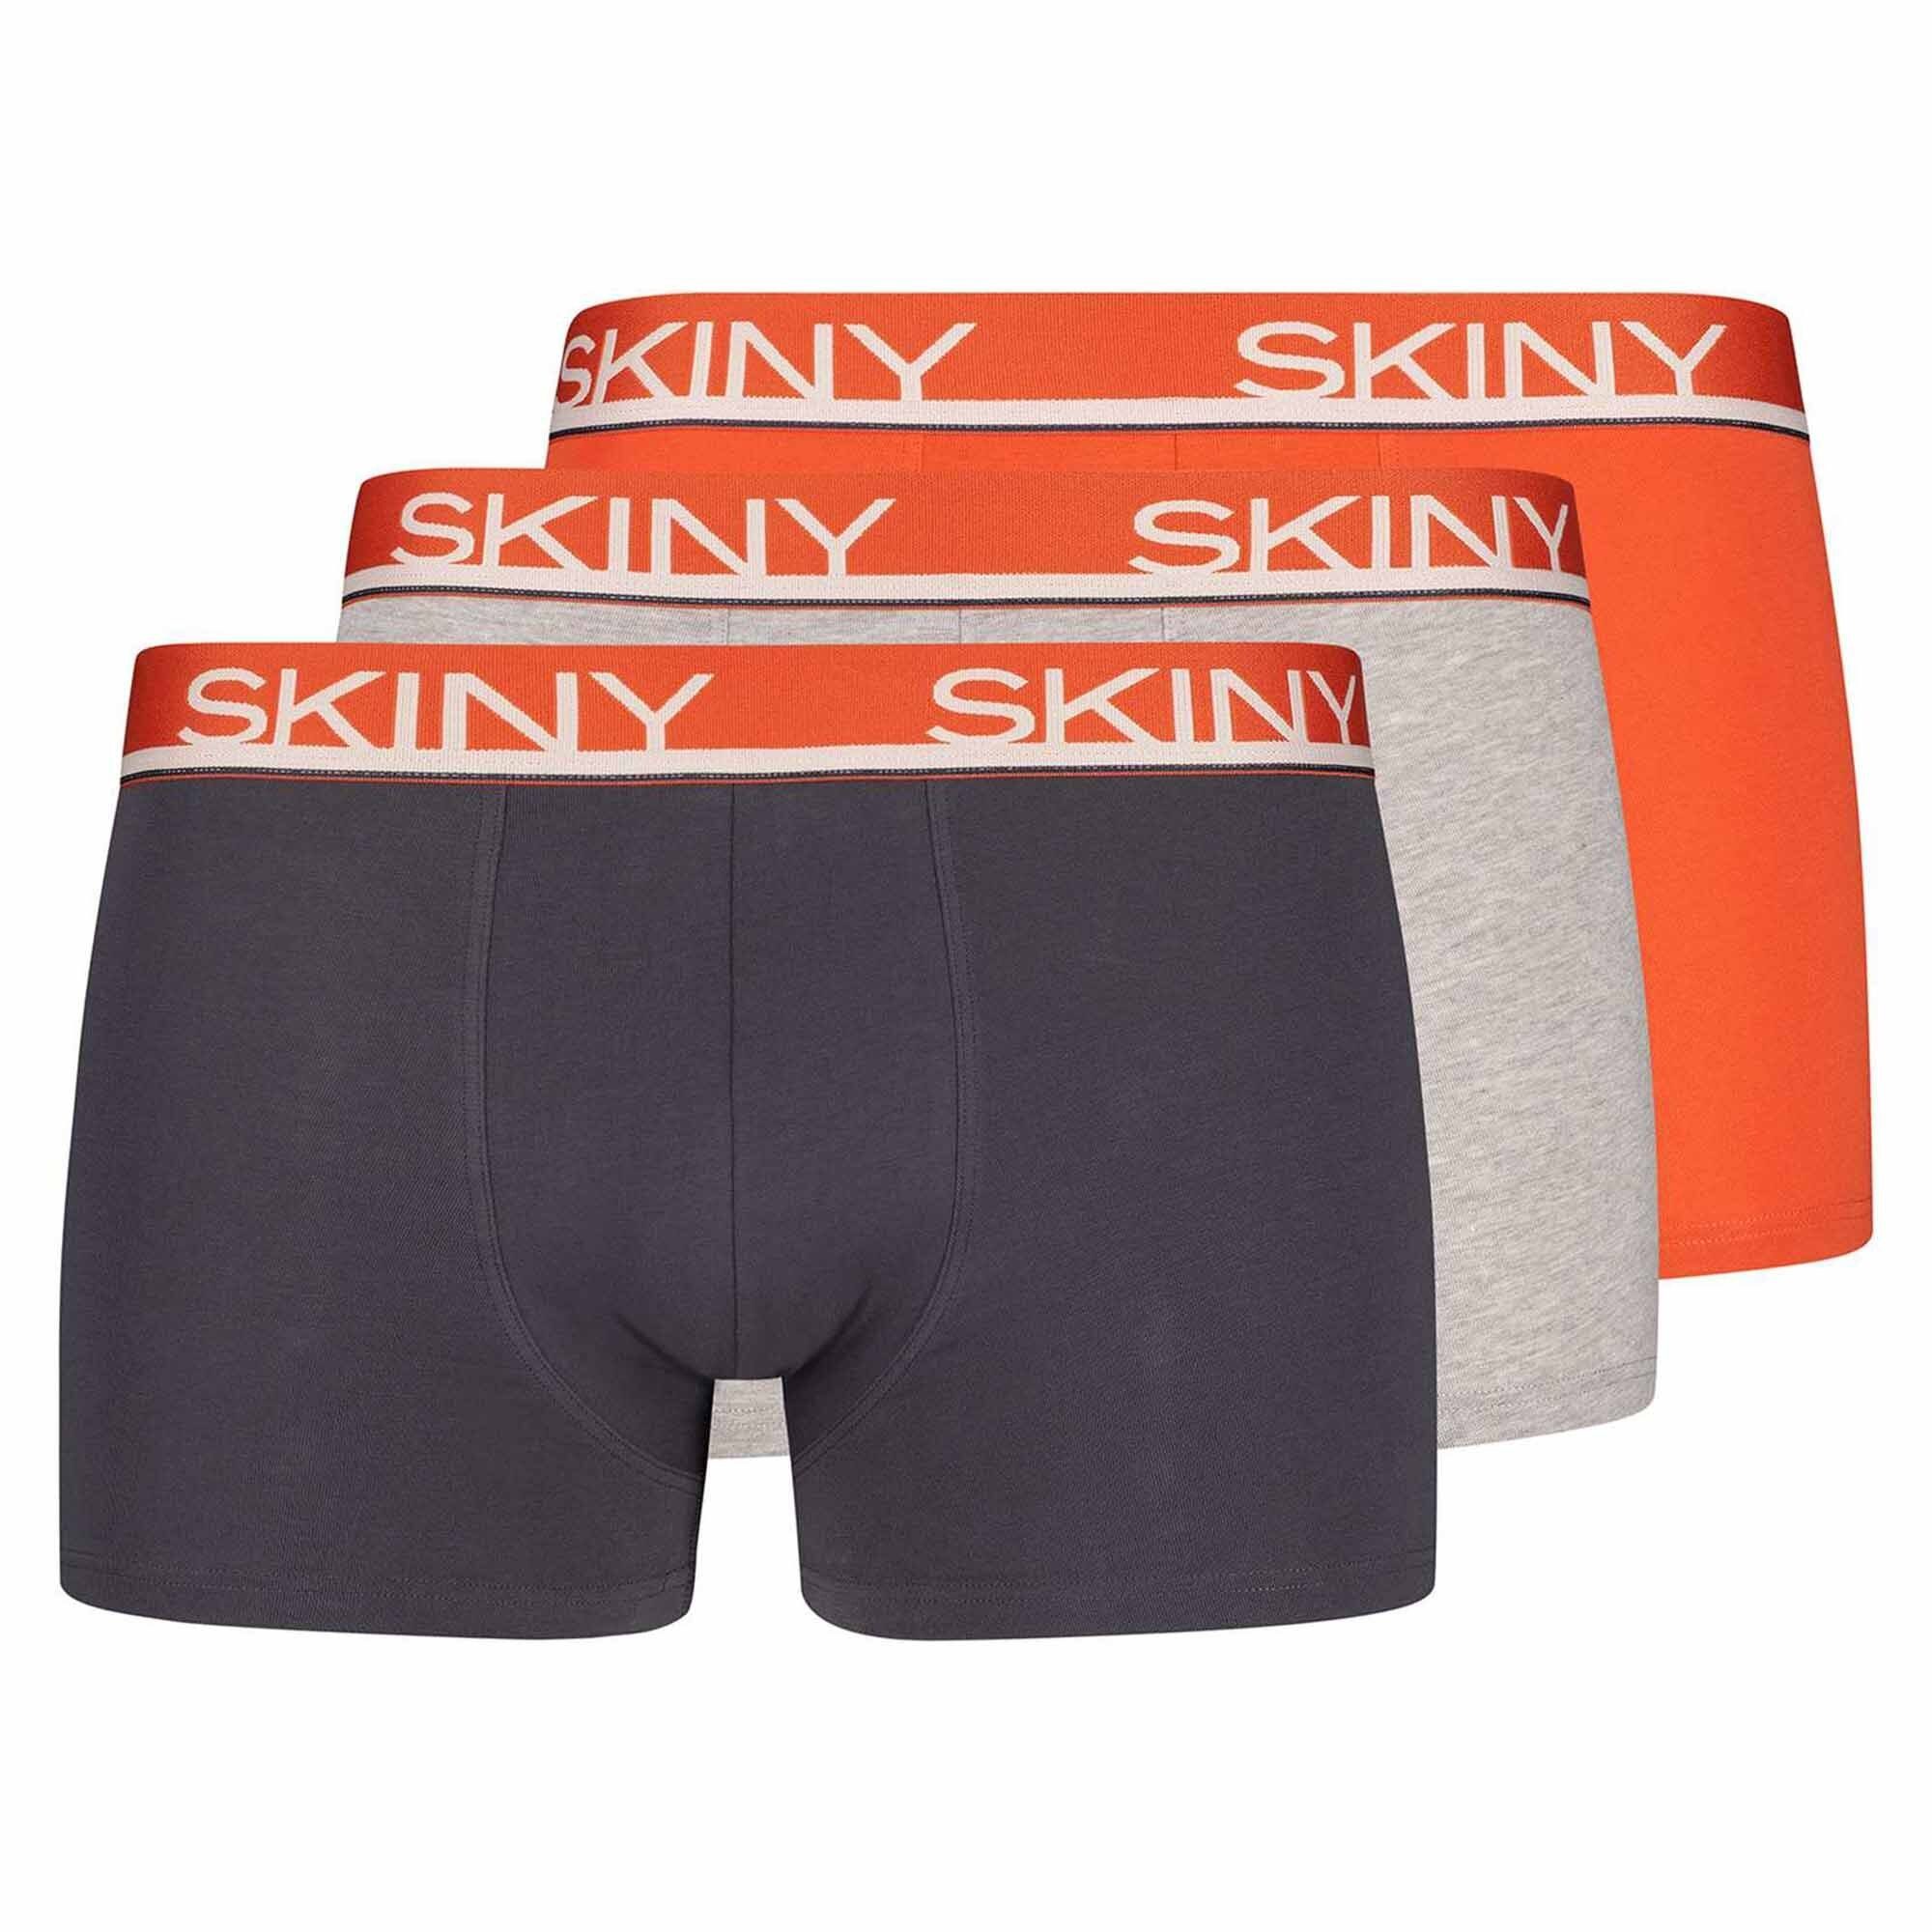 Skiny Grau/Orange Trunks, Pants - Boxer Shorts Herren Boxer 3er Pack